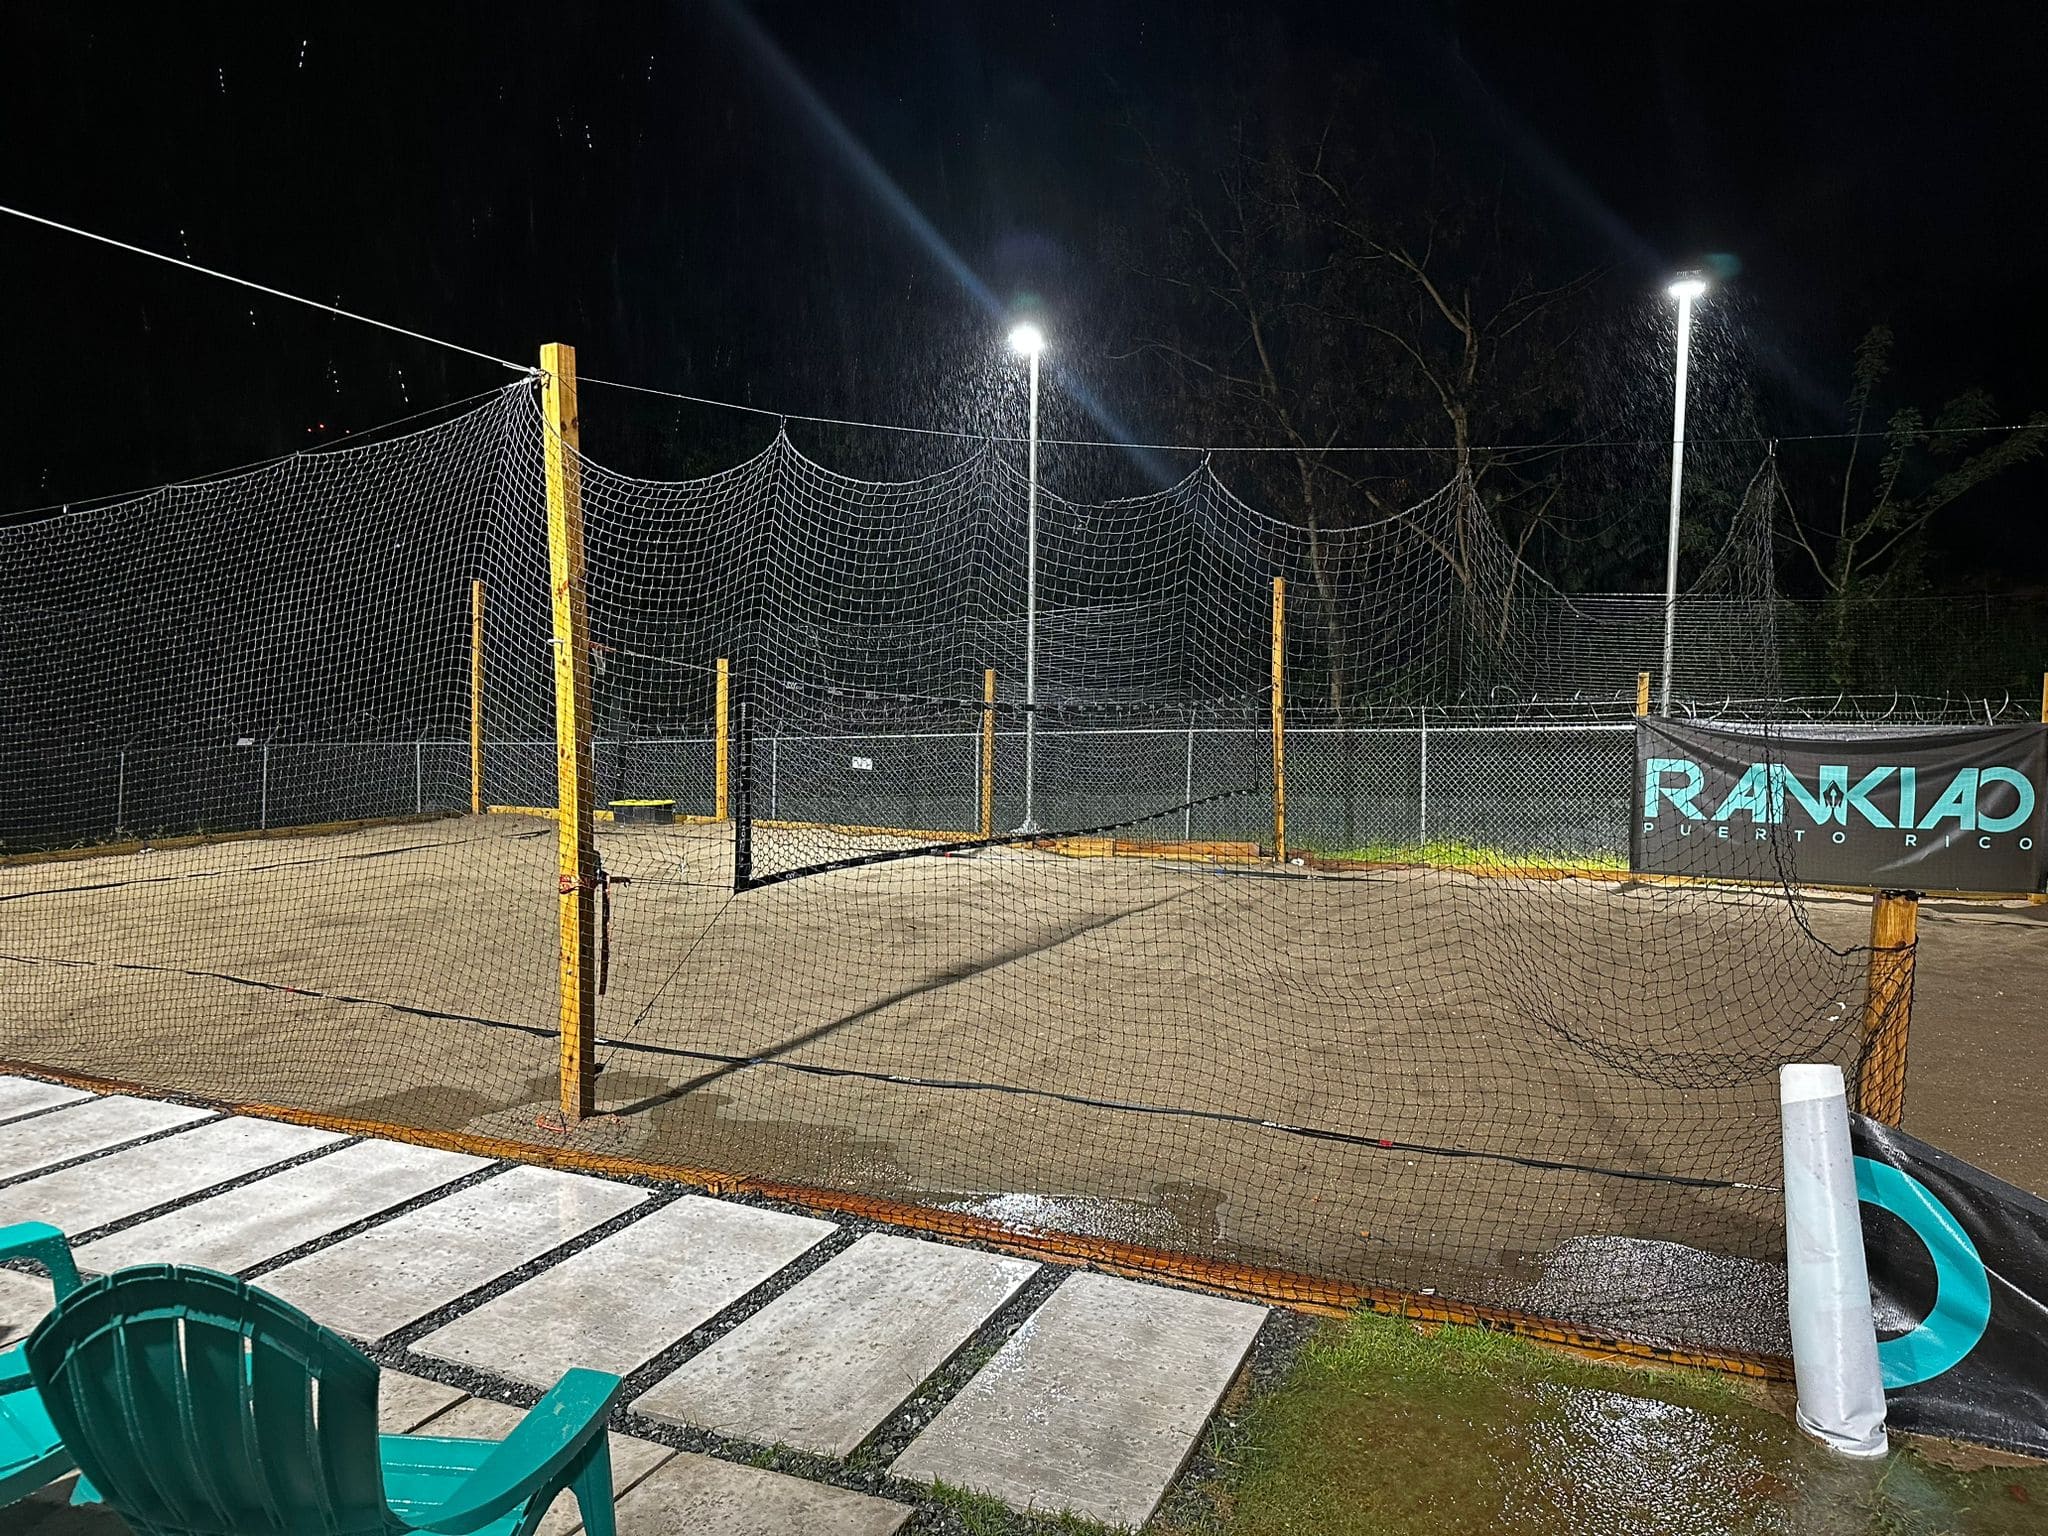 400W floodlight in tennis court